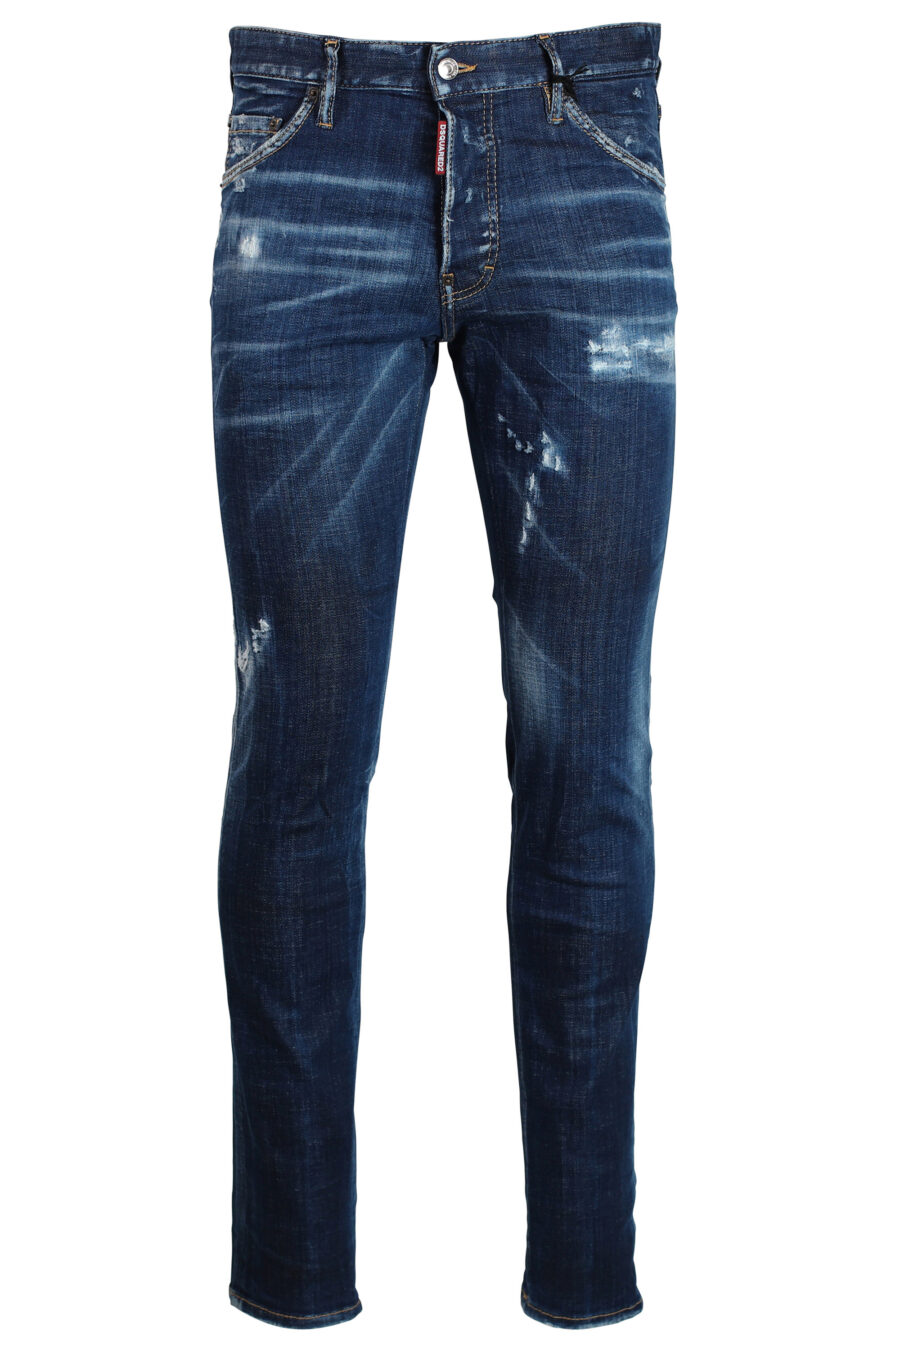 Icon cool guy" Jeans dunkelblau semi-getragen - 8052134643259